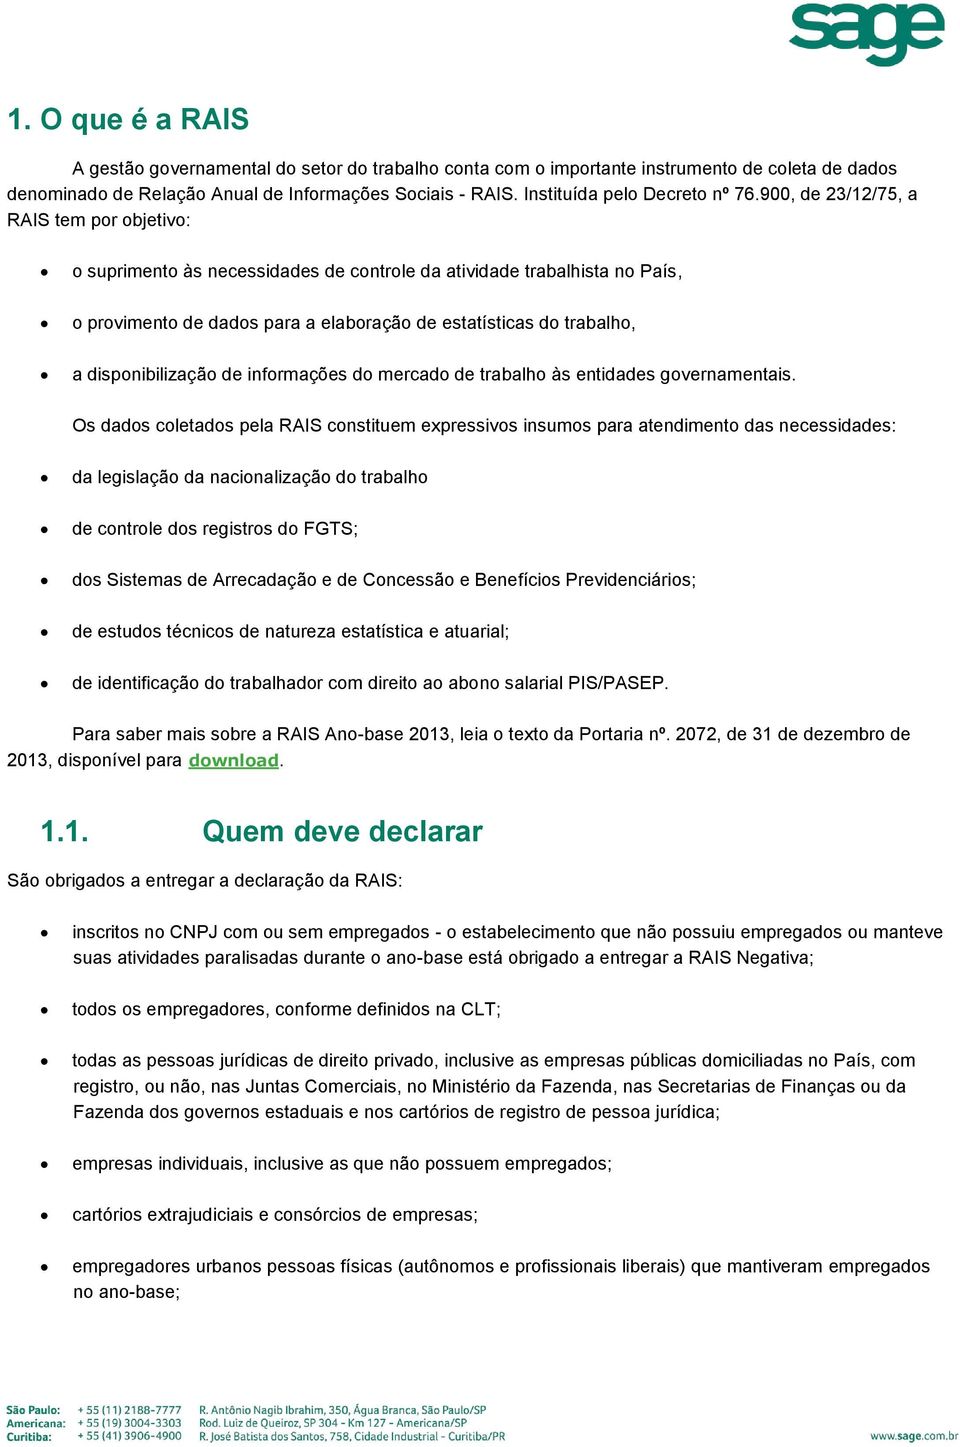 900, de 23/12/75, a RAIS tem por objetivo: o suprimento às necessidades de controle da atividade trabalhista no País, o provimento de dados para a elaboração de estatísticas do trabalho, a